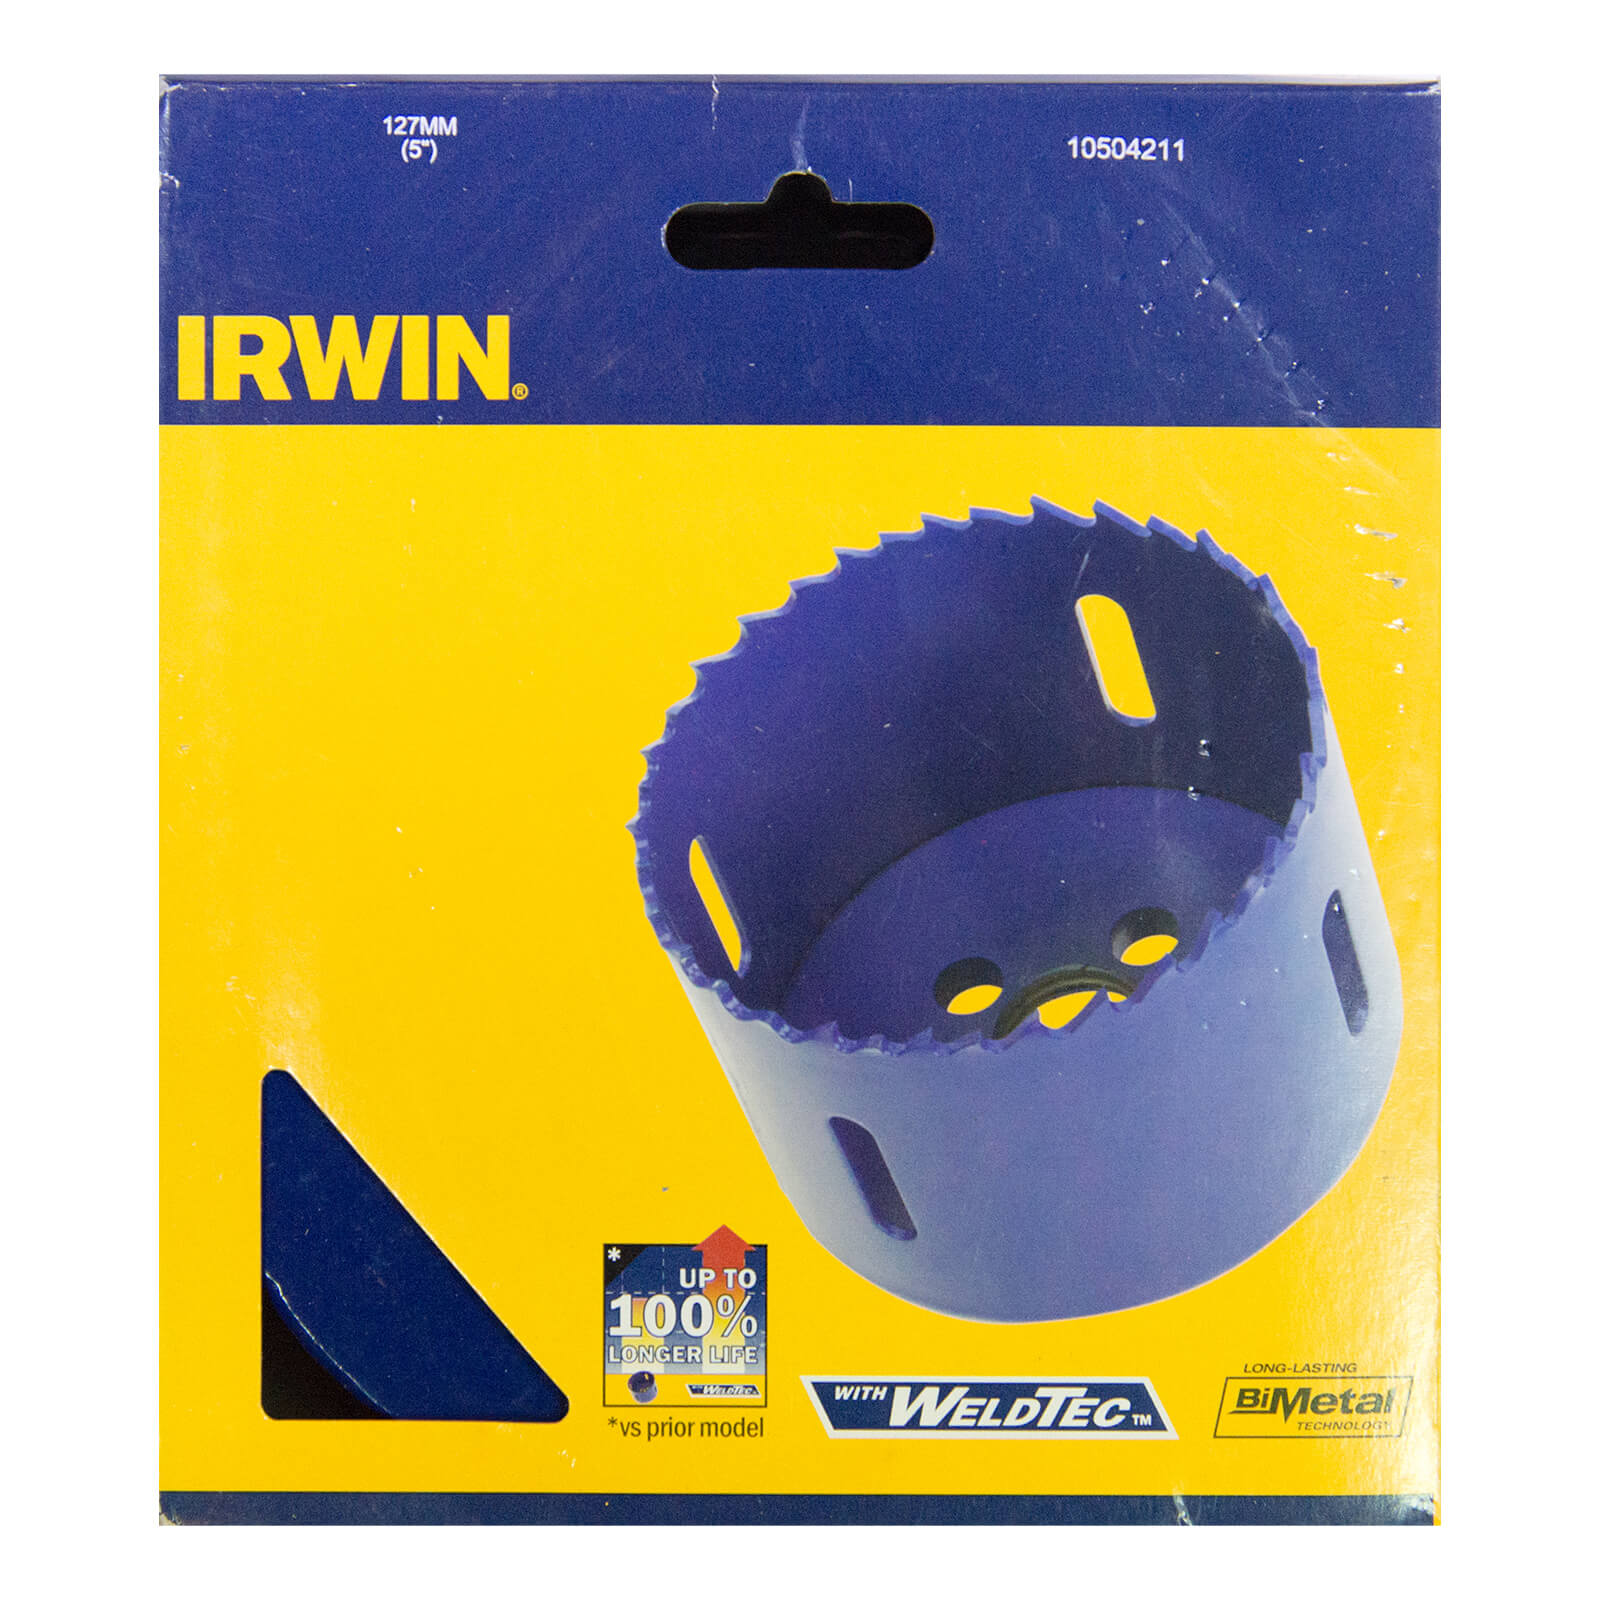 IRWIN Bi-Metal Hole Saw - 127mm